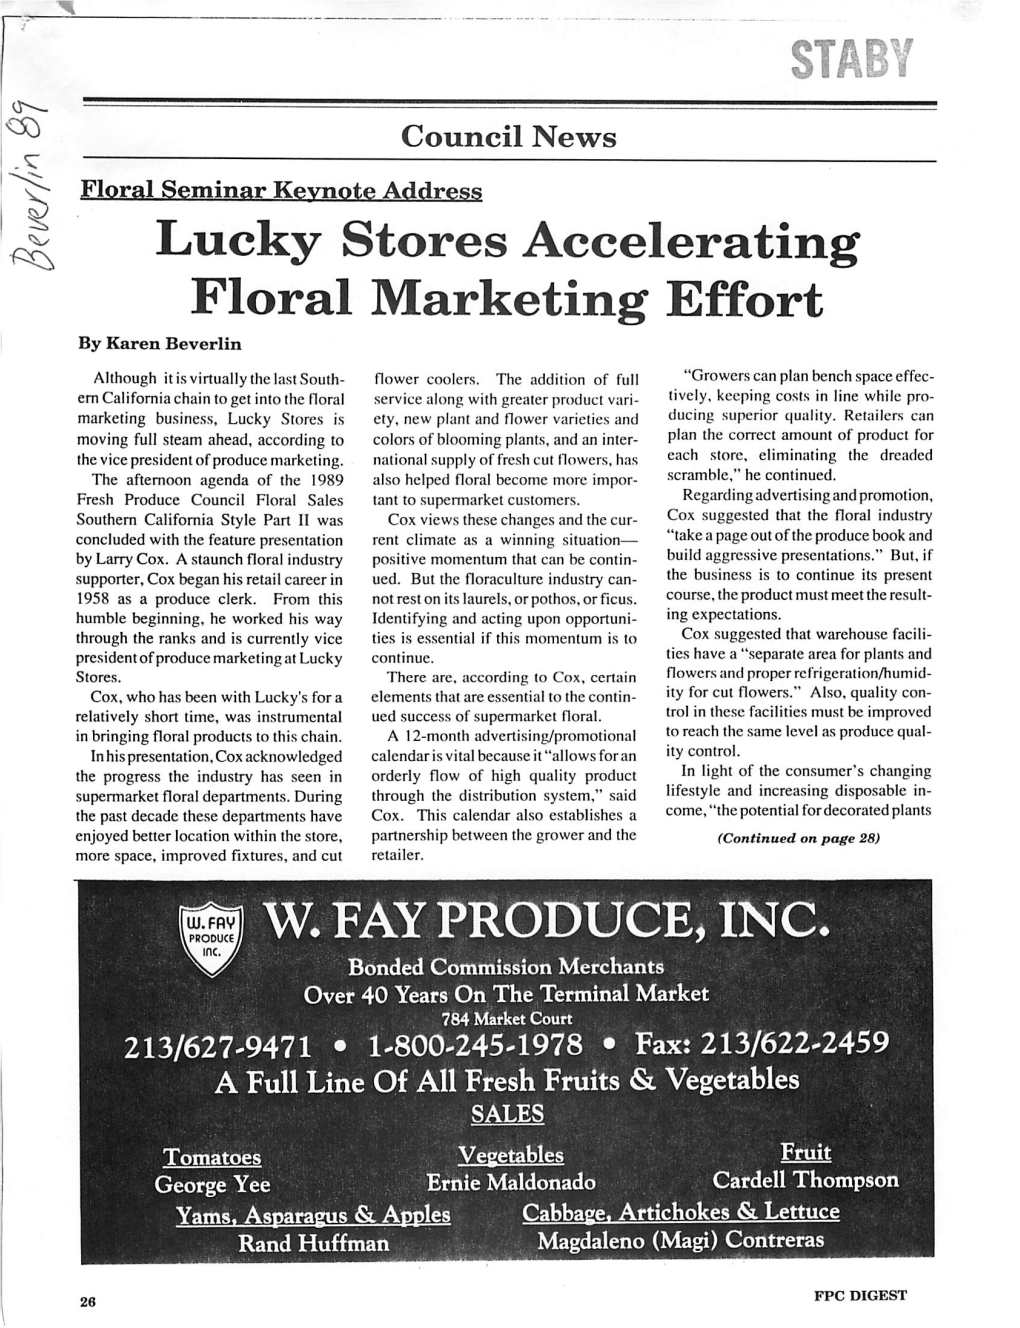 Lucky Stores Accelerating Floral Marketing Effort by Karen Beverlin